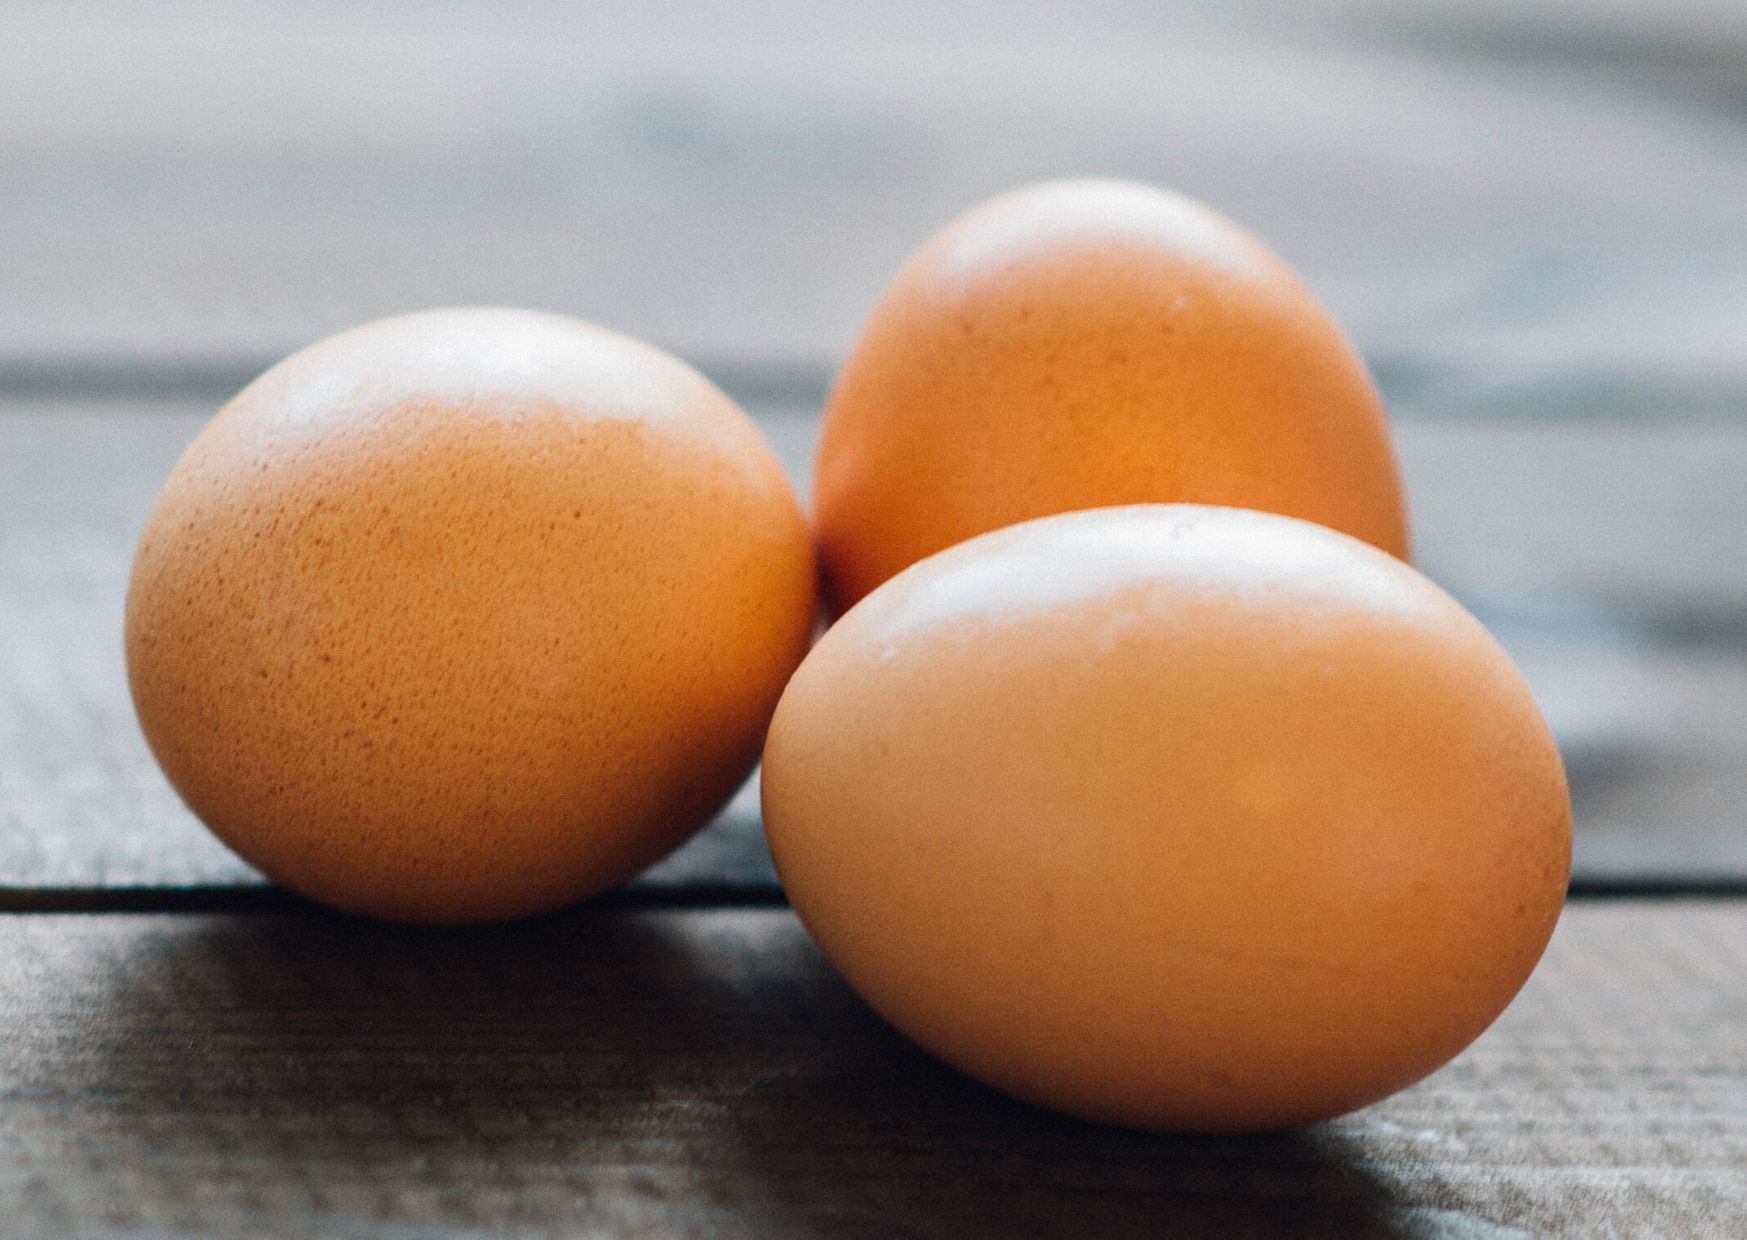 Come sostituire le uova in cucina? Scopriamo insieme come possiamo sostituirle in preparazioni dolci e salate!